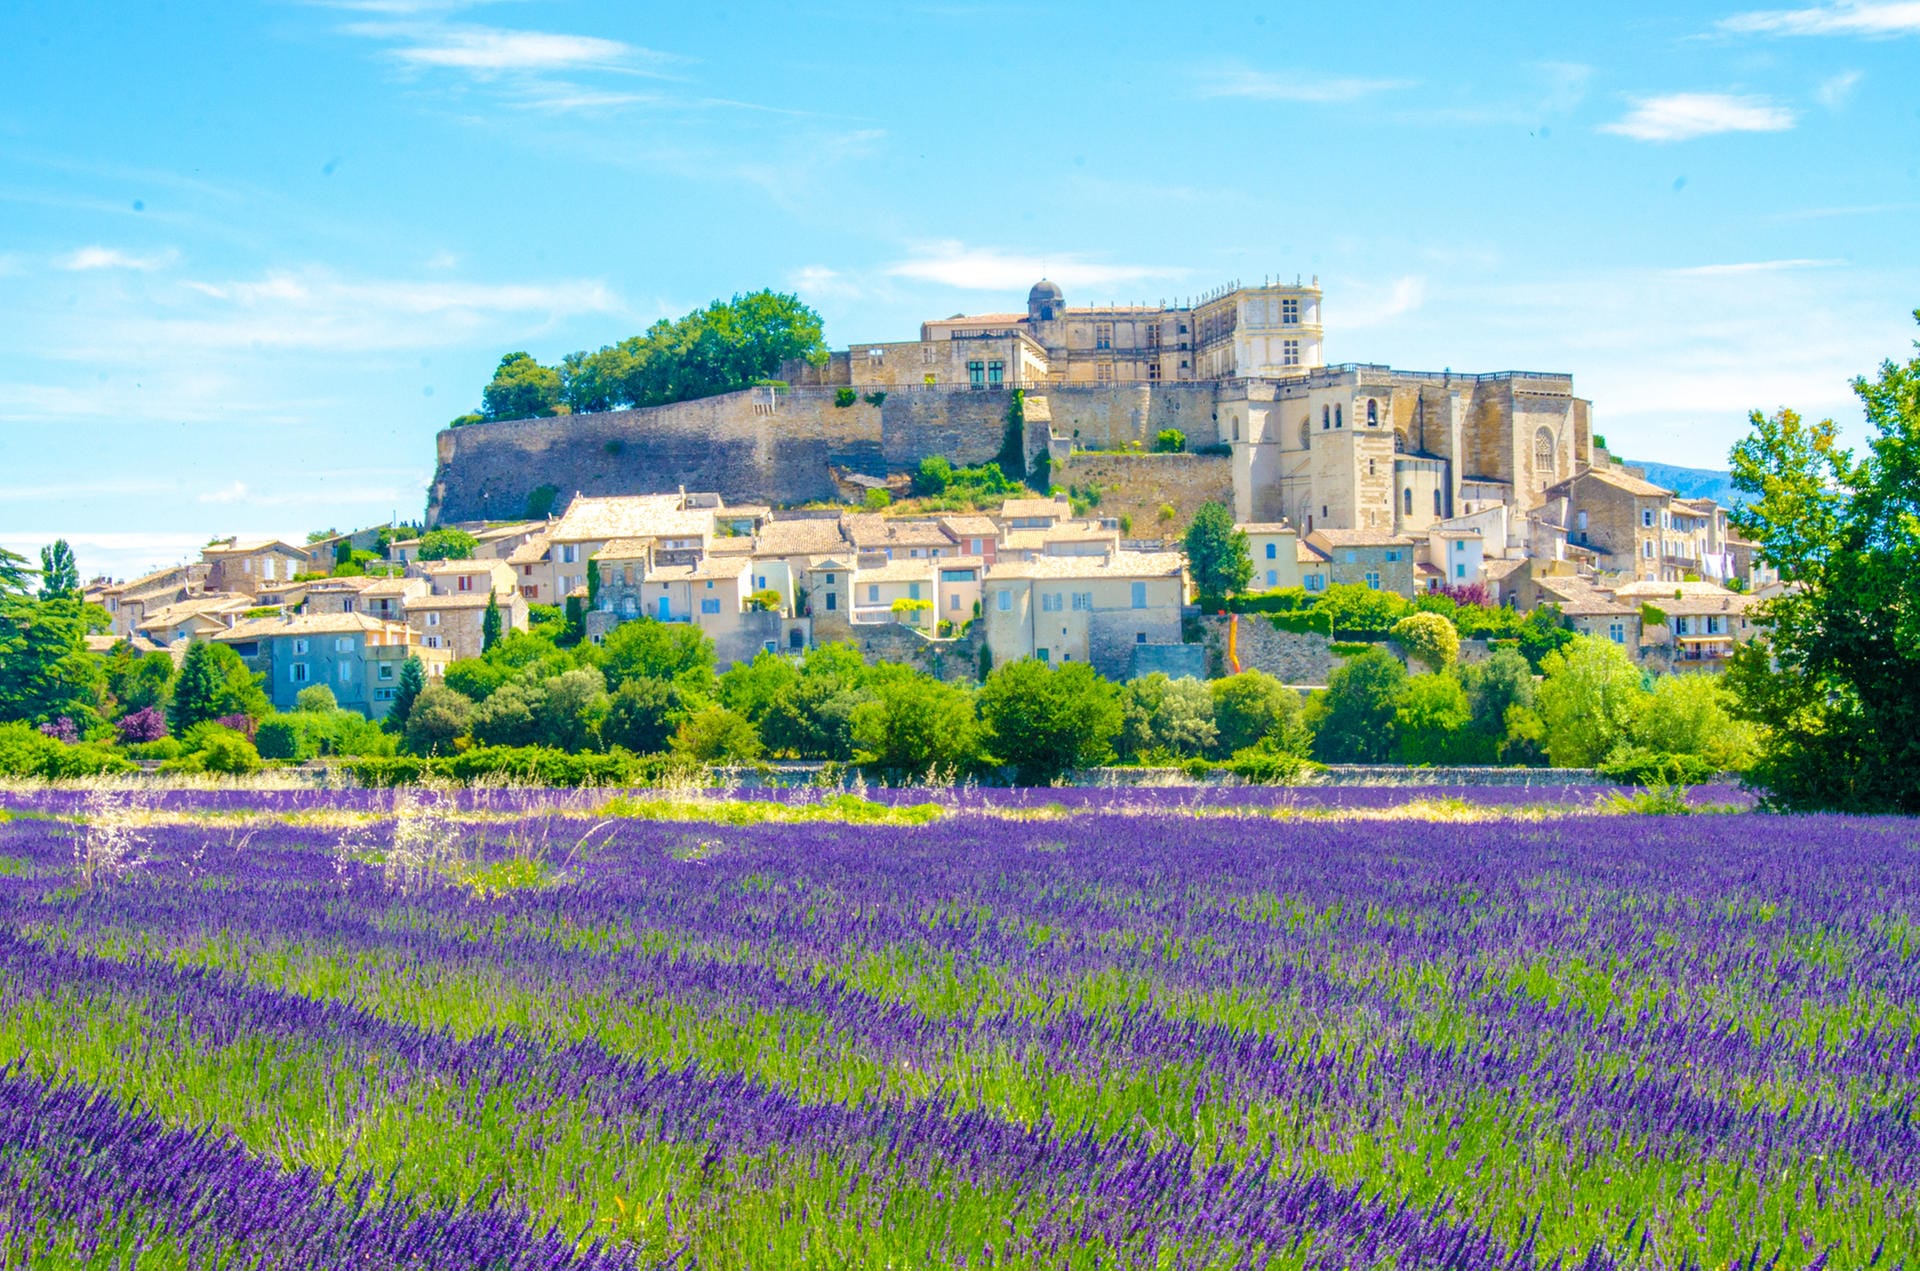 Sommer in der Provence: Die Region dient seit Jahrhunderten Künstlern als Inspiration.